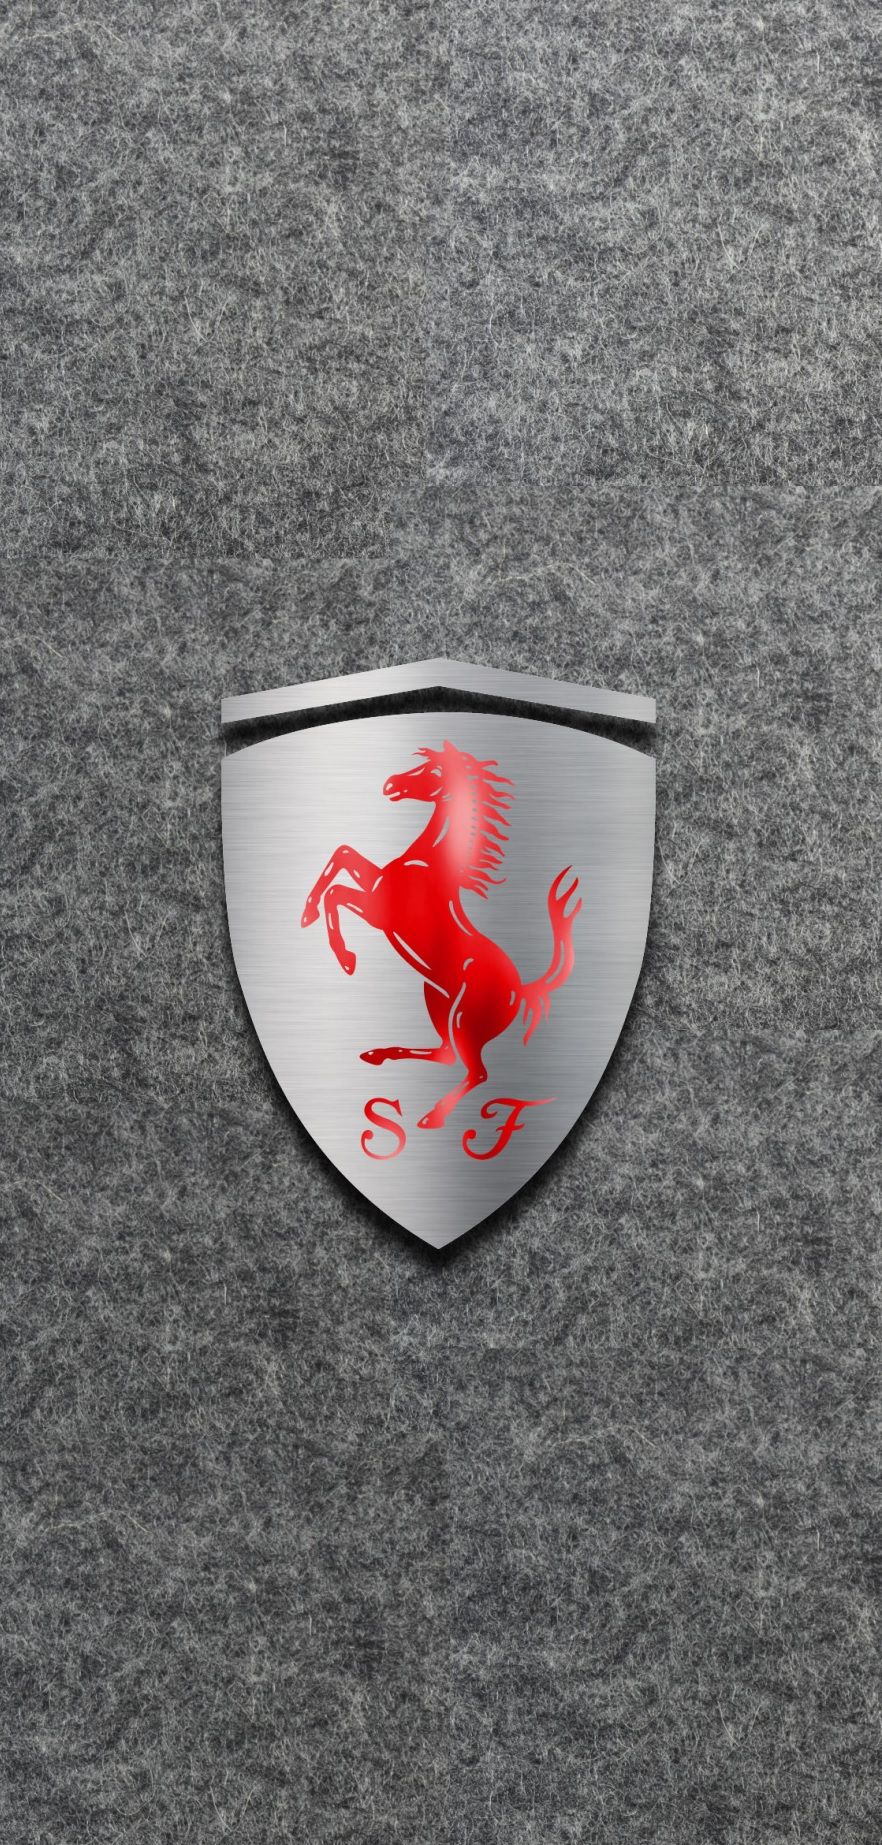 Scuderia Ferrari. Car wallpaper, Ferrari logo, Ferrari